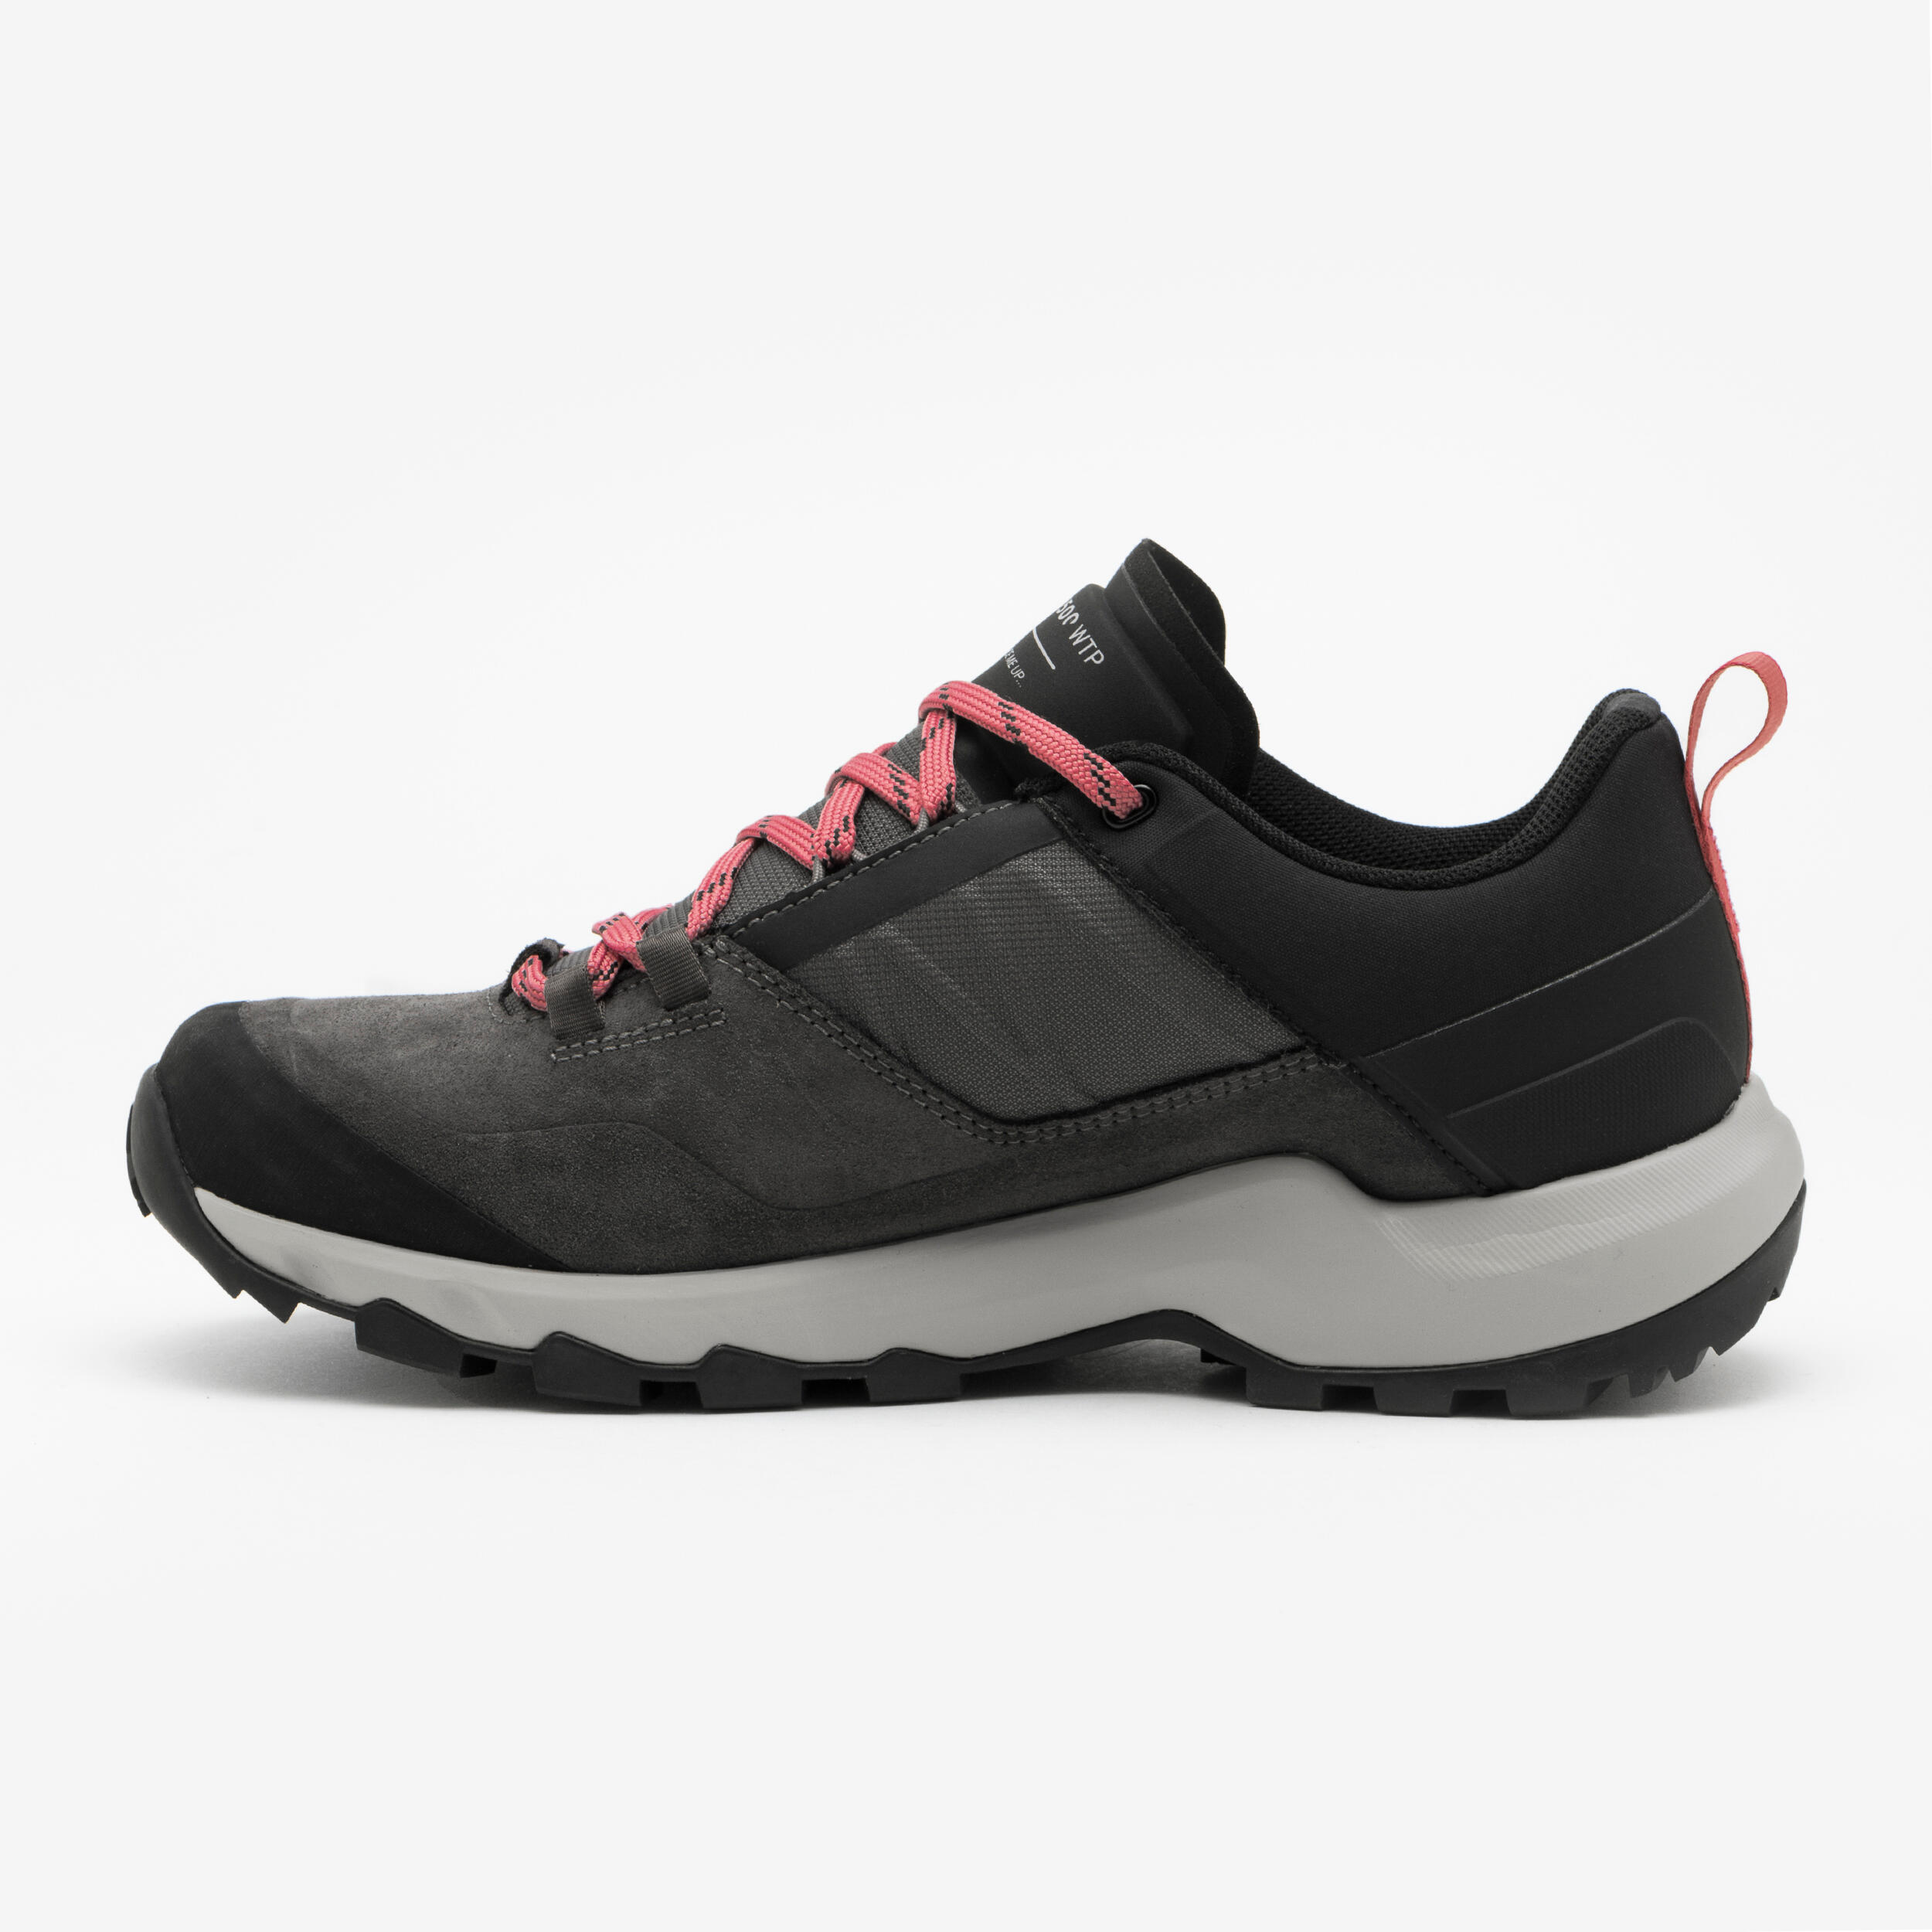 Women's waterproof mountain walking shoes - MH500 Grey 5/8